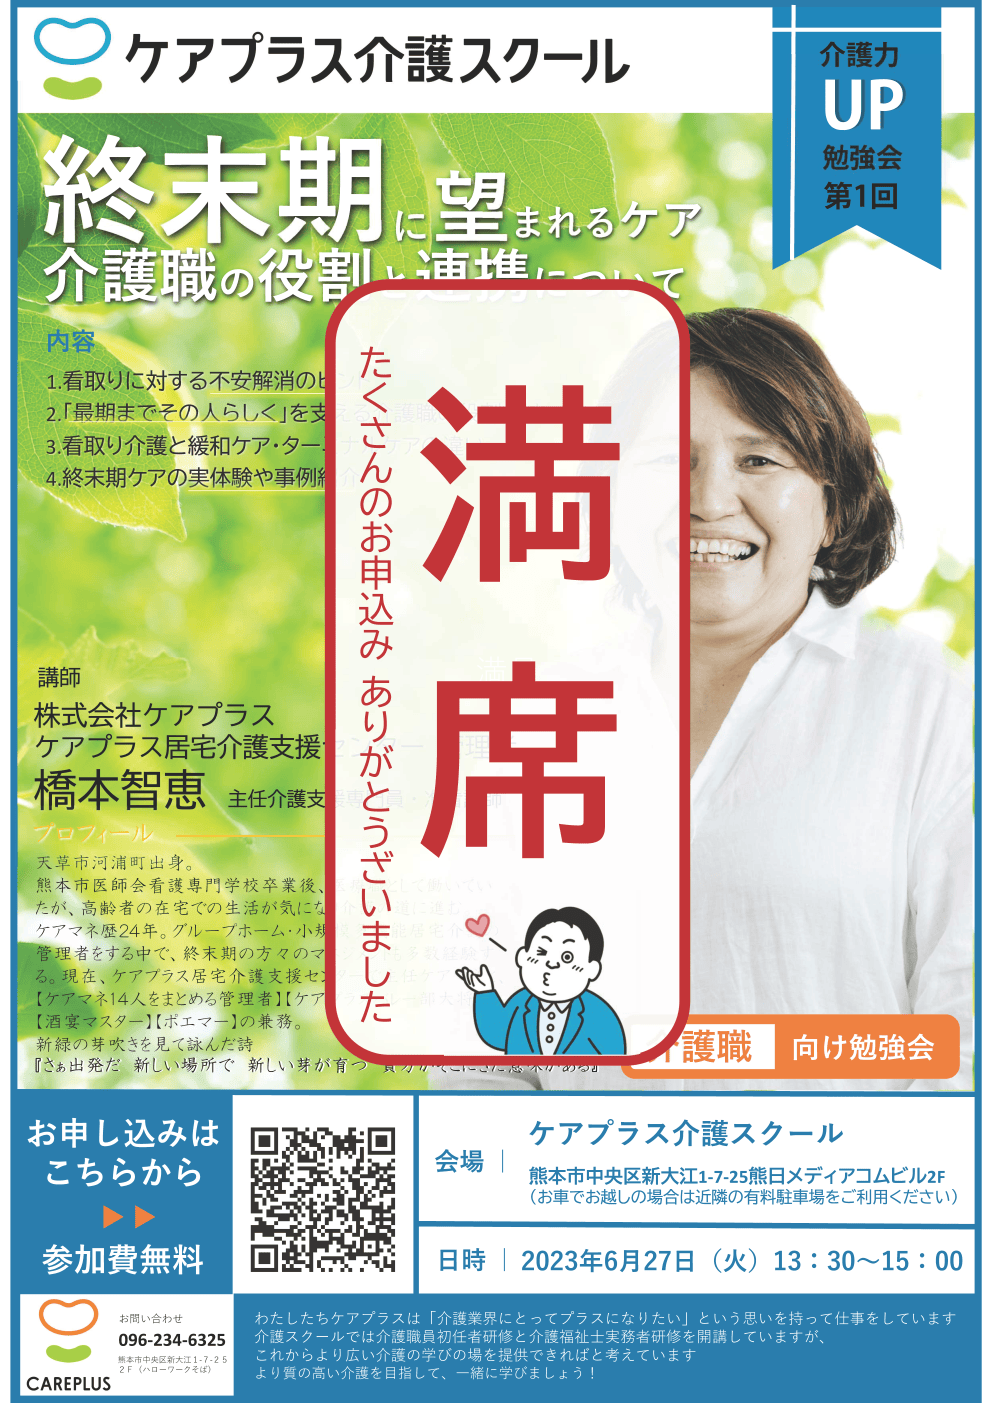 【セミナー情報】介護力UPを目指した勉強会 6月開催！